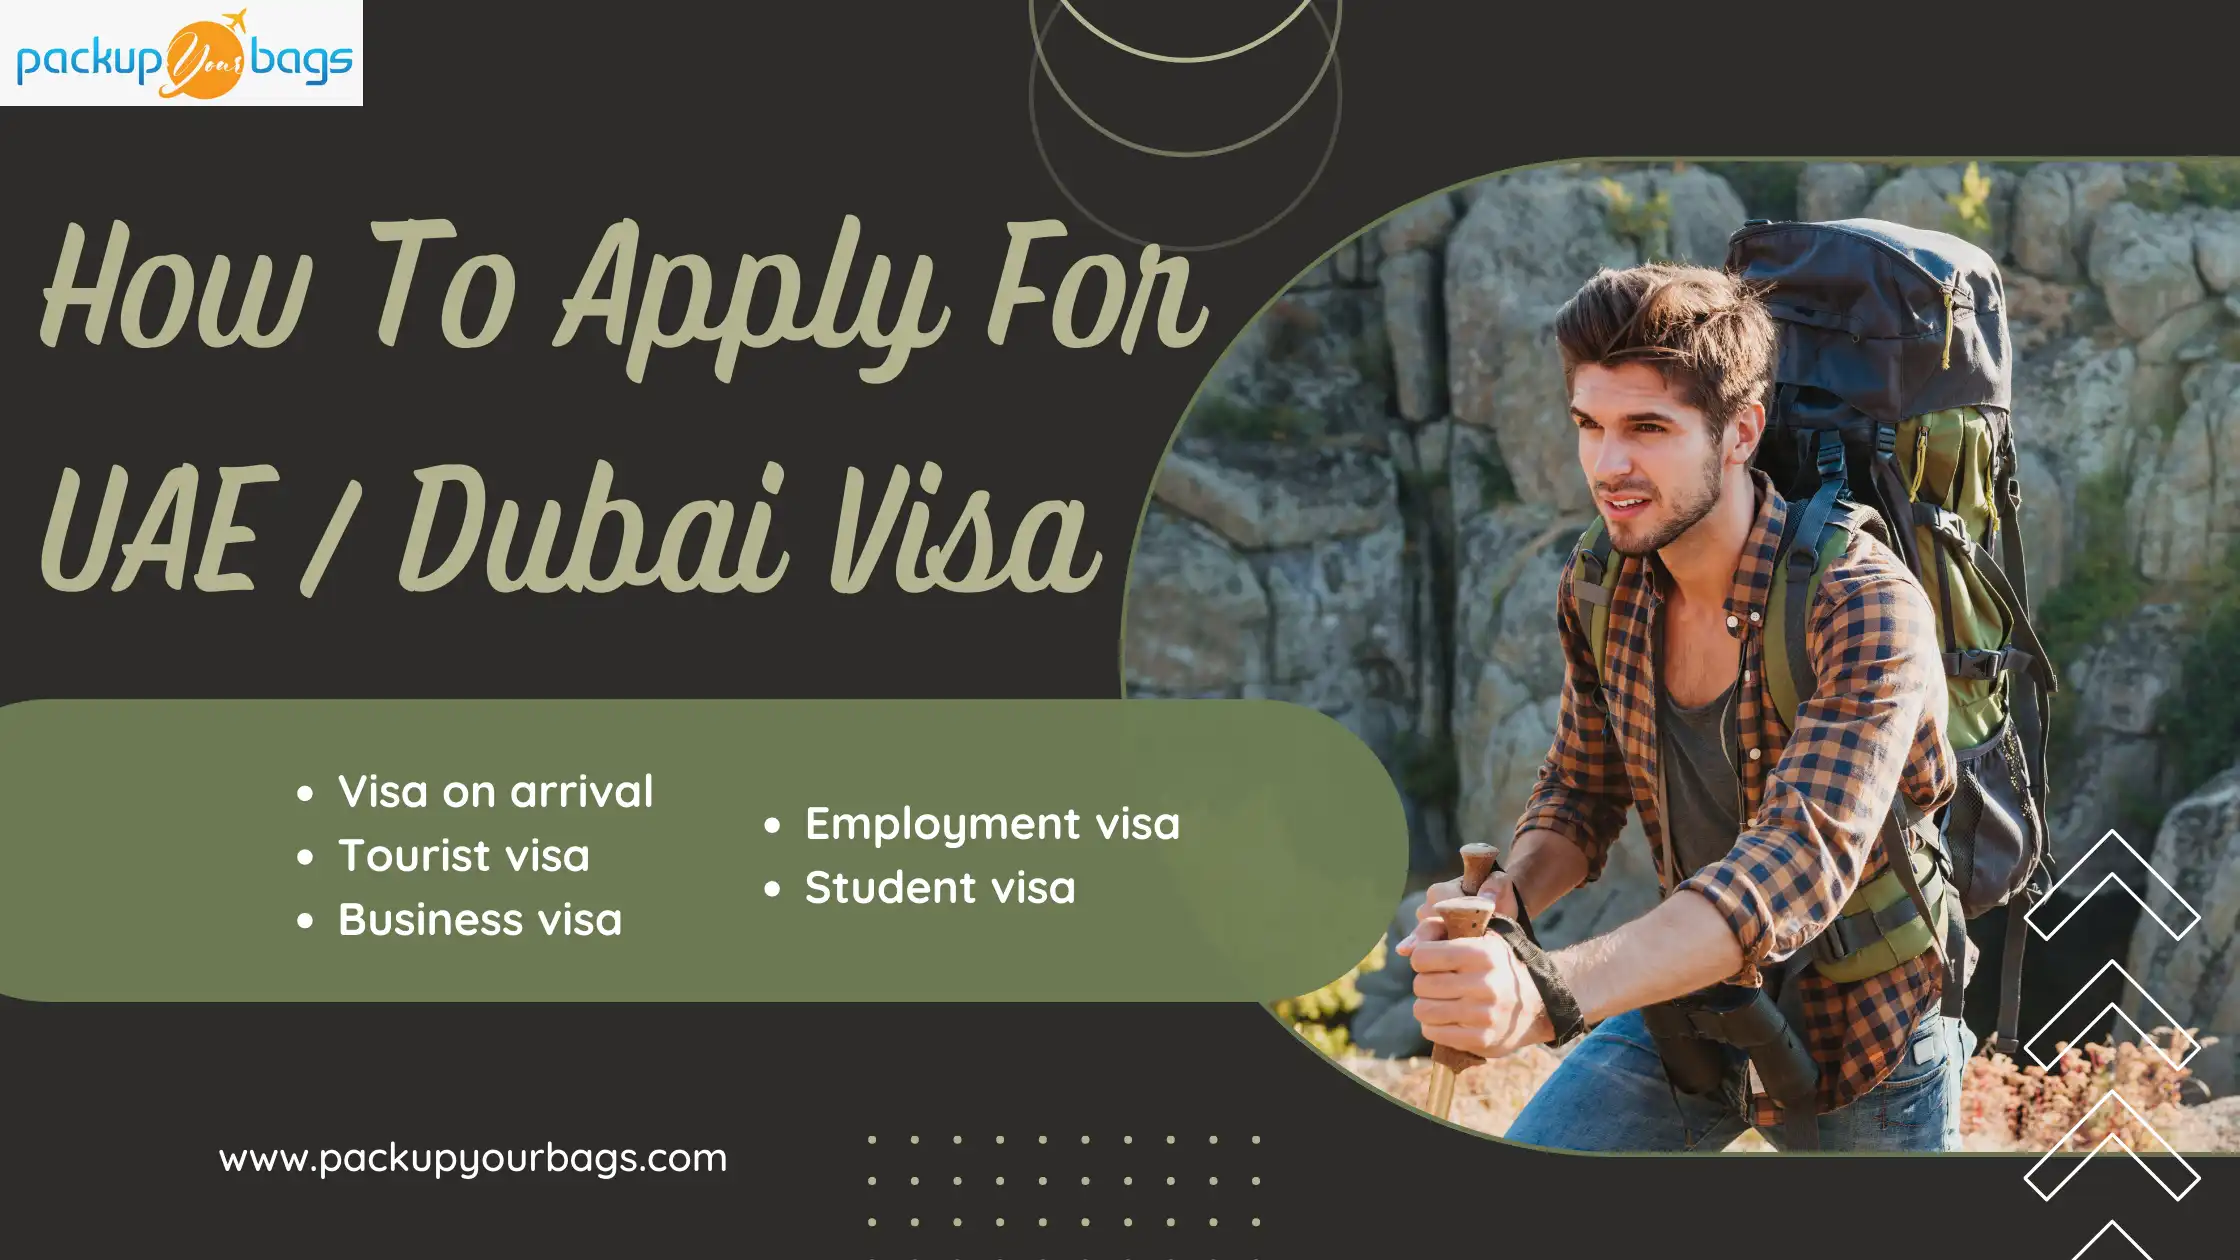 Applying For A Visa To Enter The UAE/ Dubai